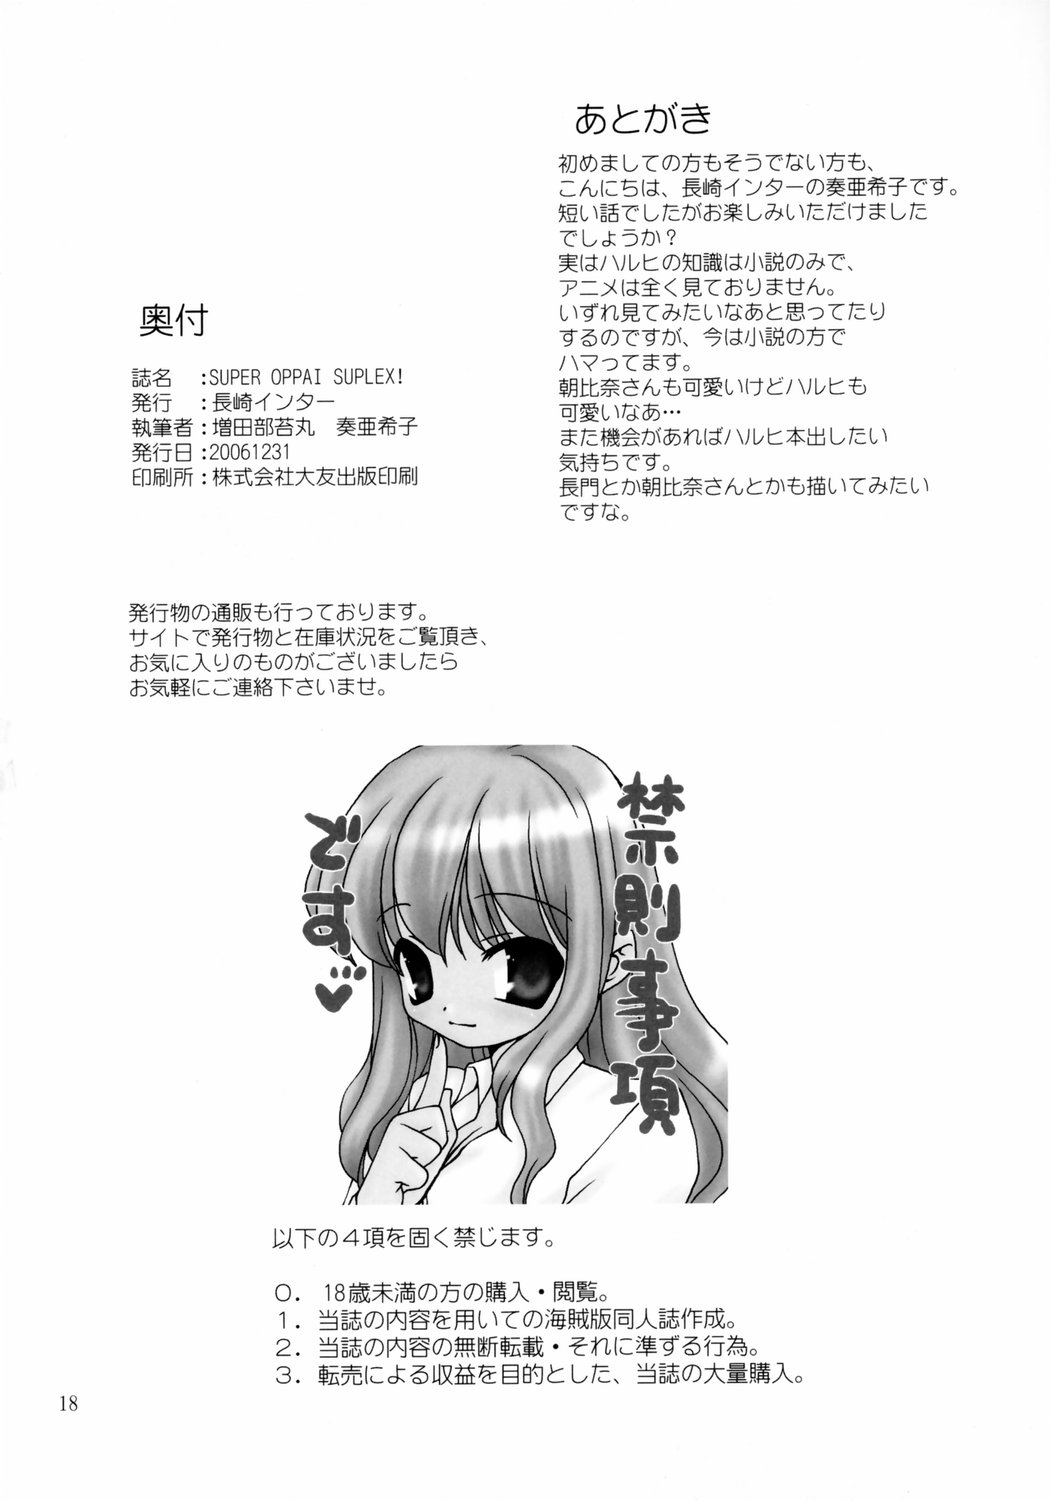 (C71) [Nagasaki-inter (Sou Akiko)] Super Oppai Suplex! (Suzumiya Haruhi no Yuuutsu [The Melancholy of Haruhi Suzumiya]) (C71) [長崎インター (奏亜希子)] SUPER OPPAI SUPLEX! (涼宮ハルヒの憂鬱)